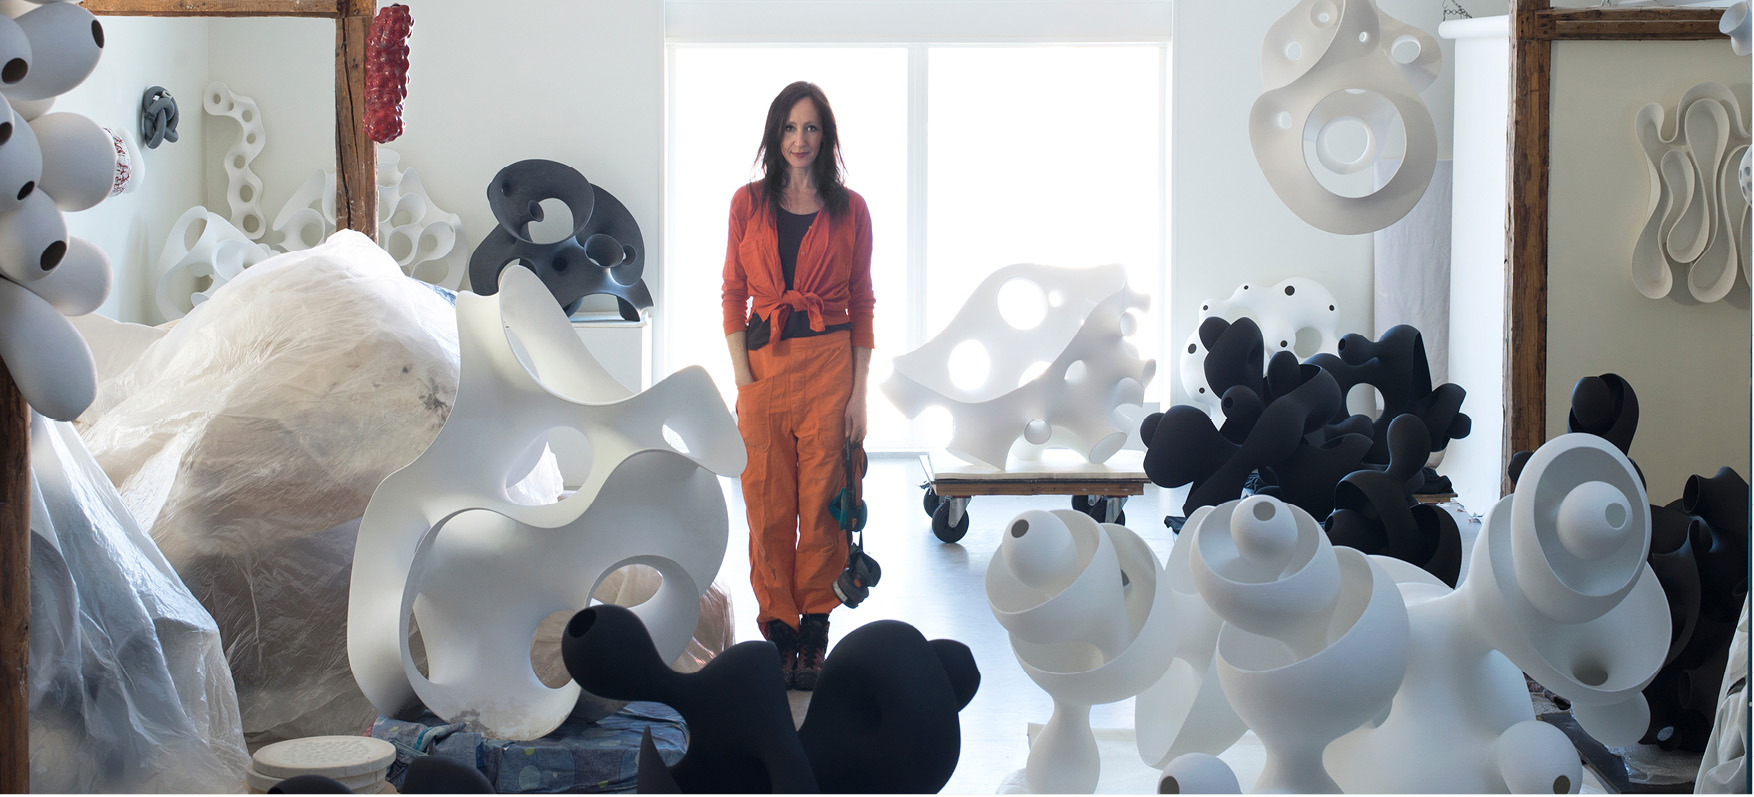 Eva Hild tillsammans med sina skulpturer